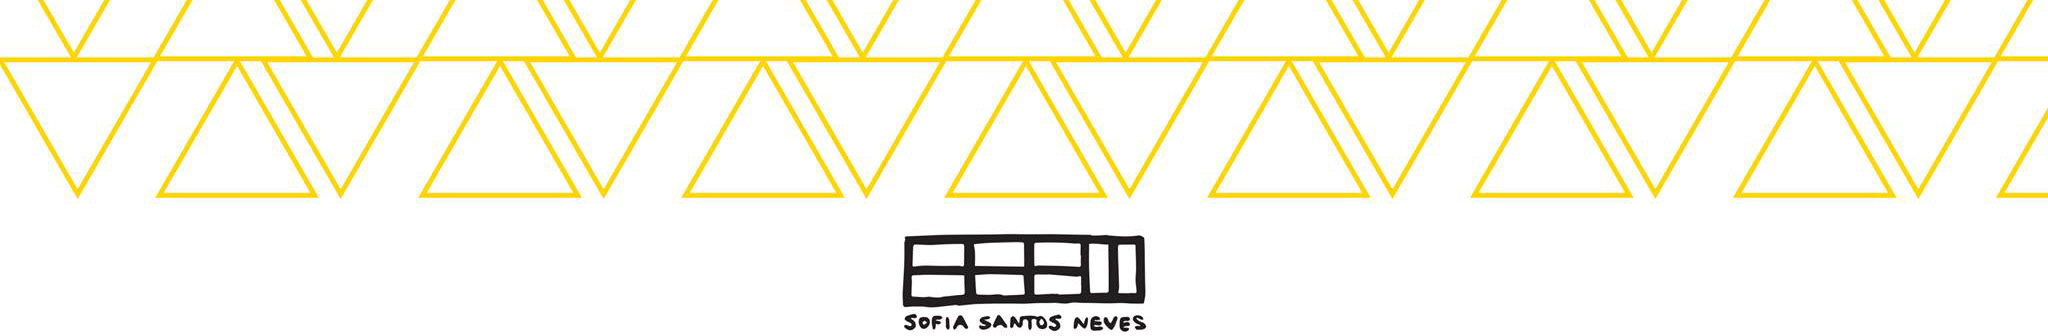 Banner de perfil de Sofia Santos Neves